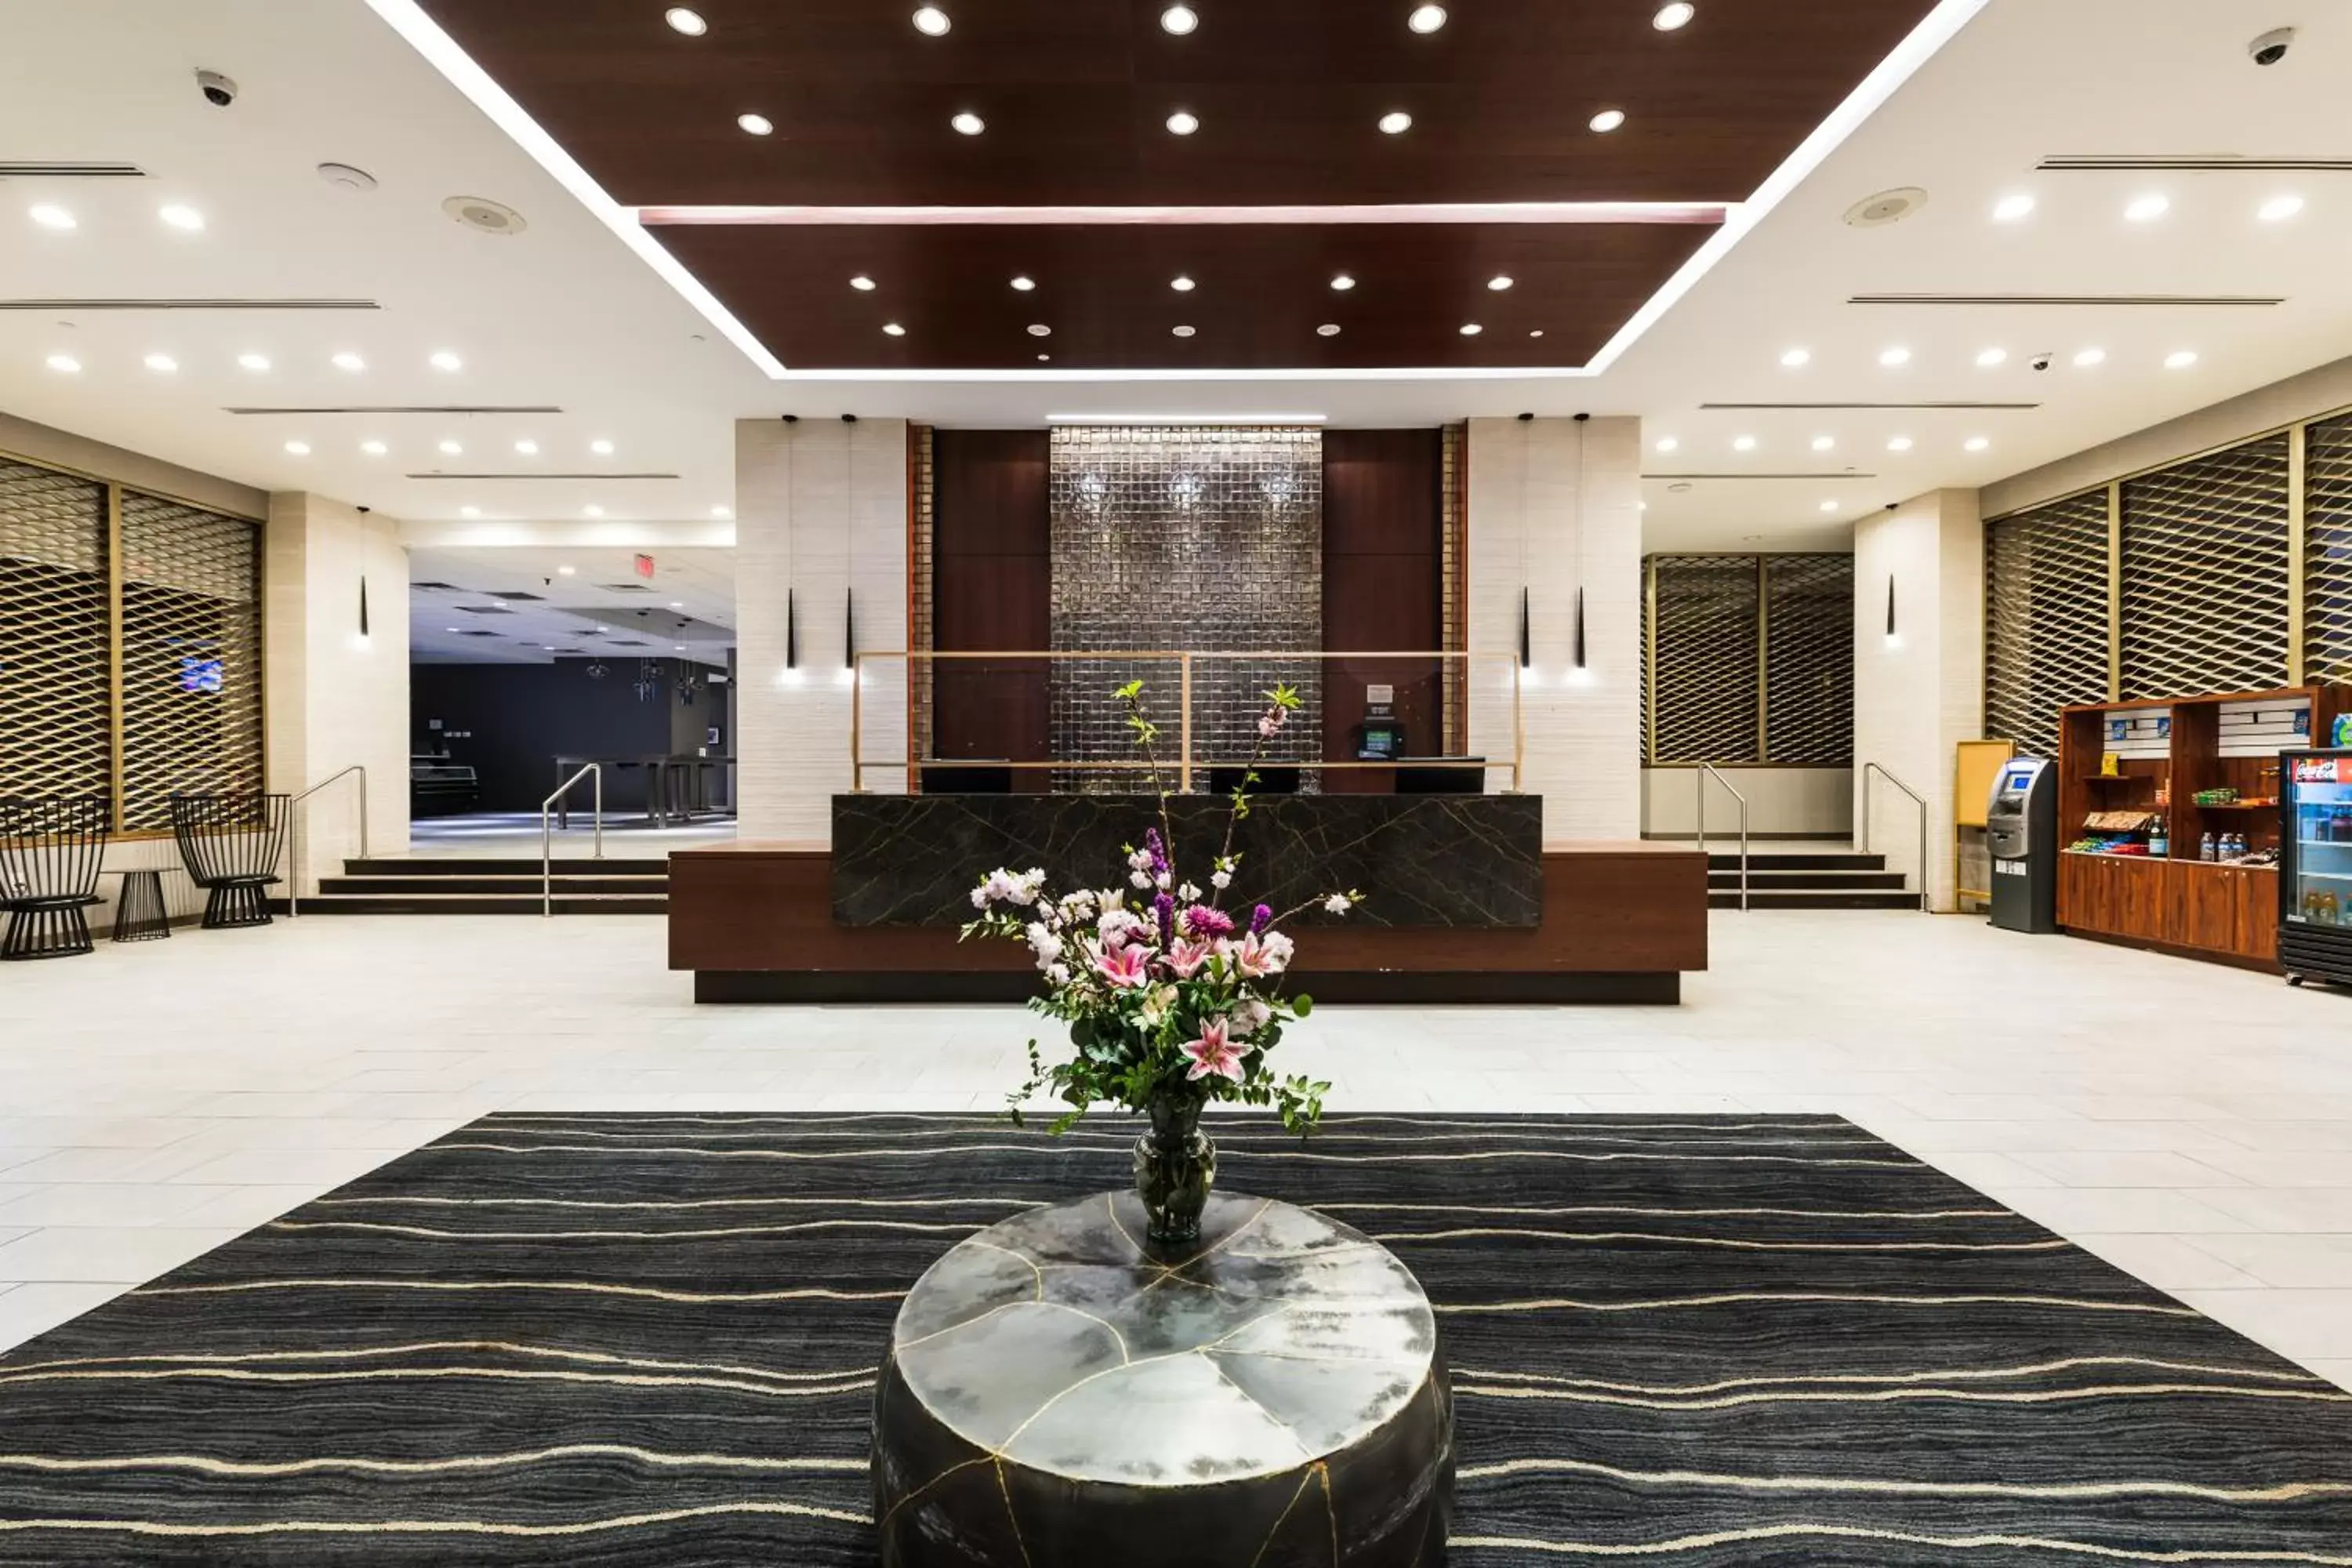 Lobby or reception, Lobby/Reception in APA Hotel Woodbridge